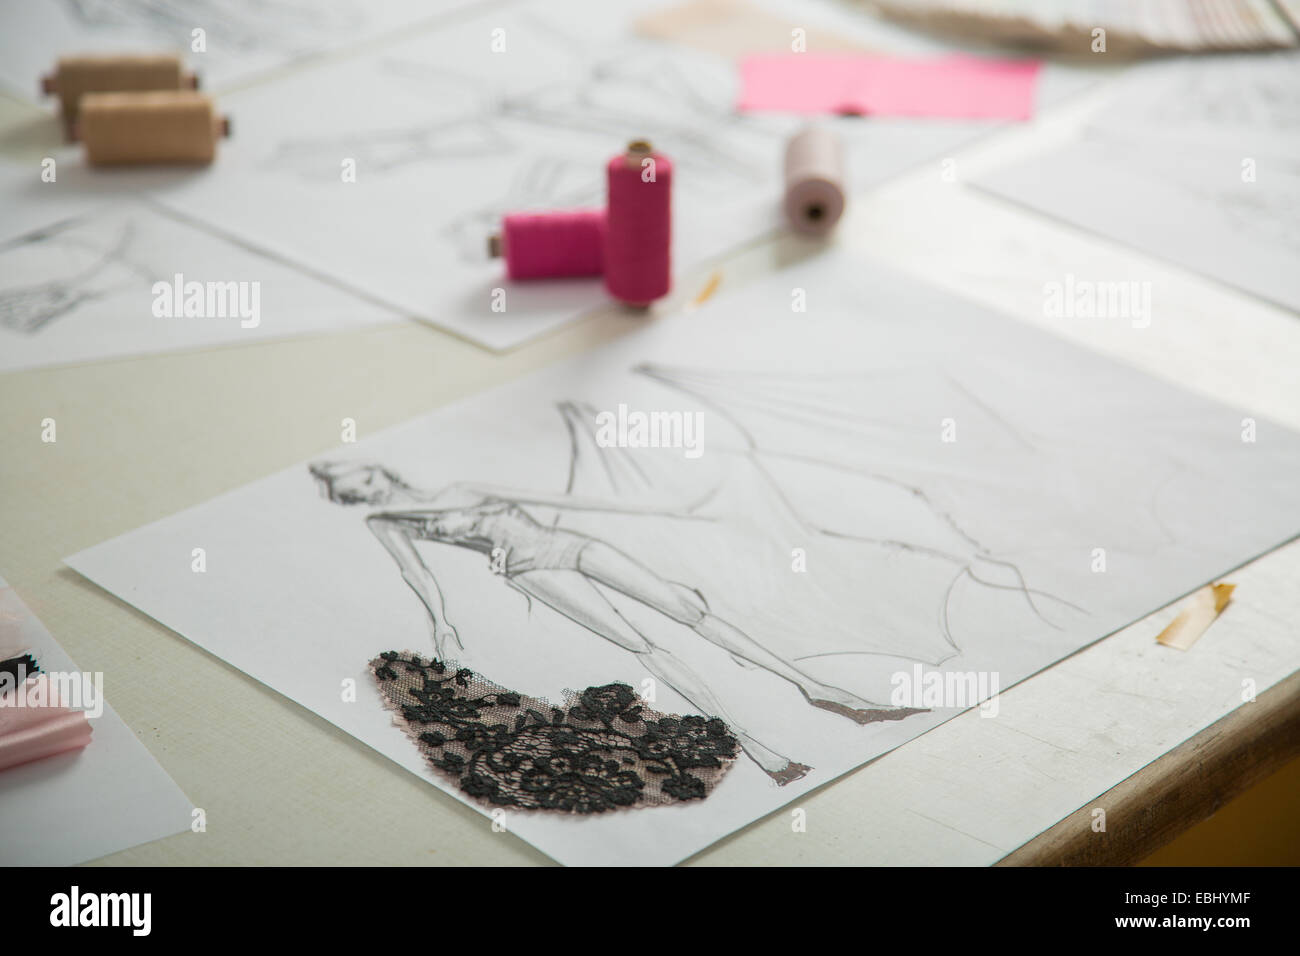 Modedesigner im Gange auf Schneider Tisch Stockfoto